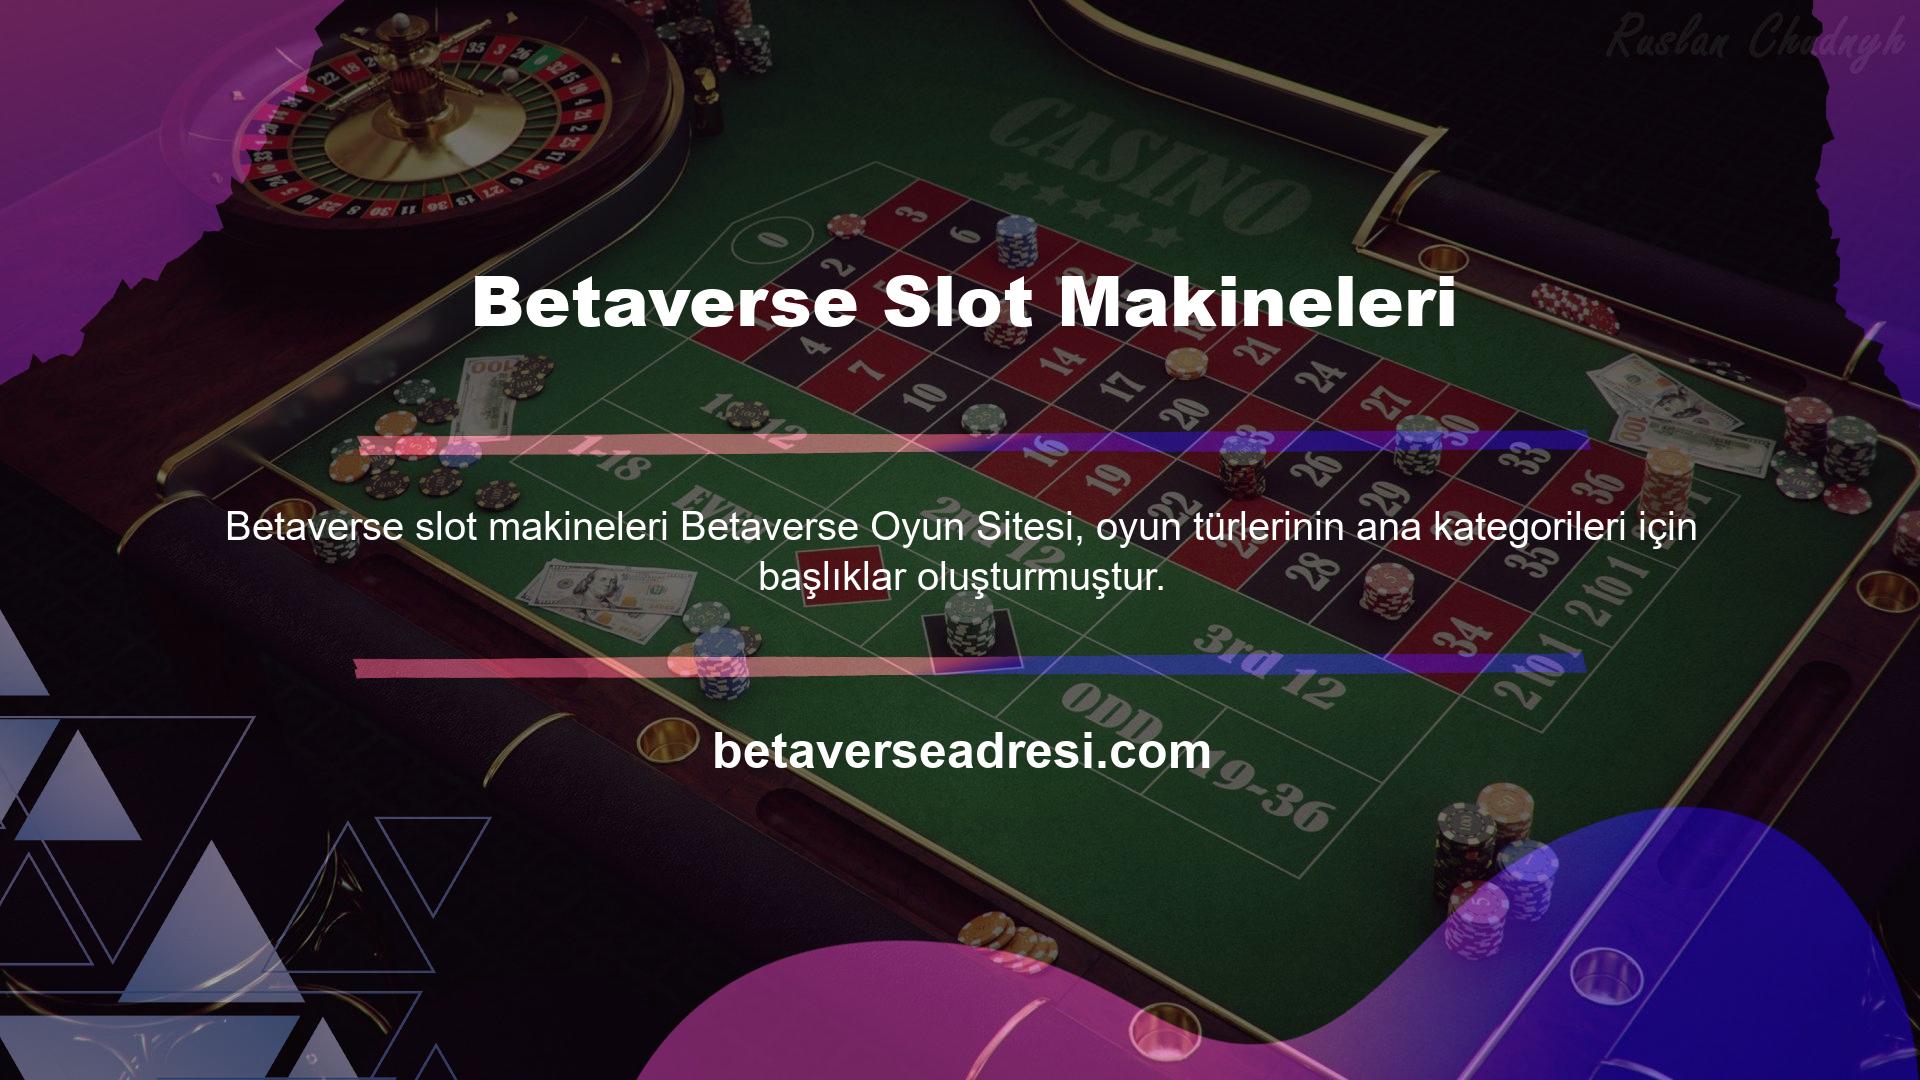 Slot makinelerine erişmek için casinosunun adını seçmelisiniz